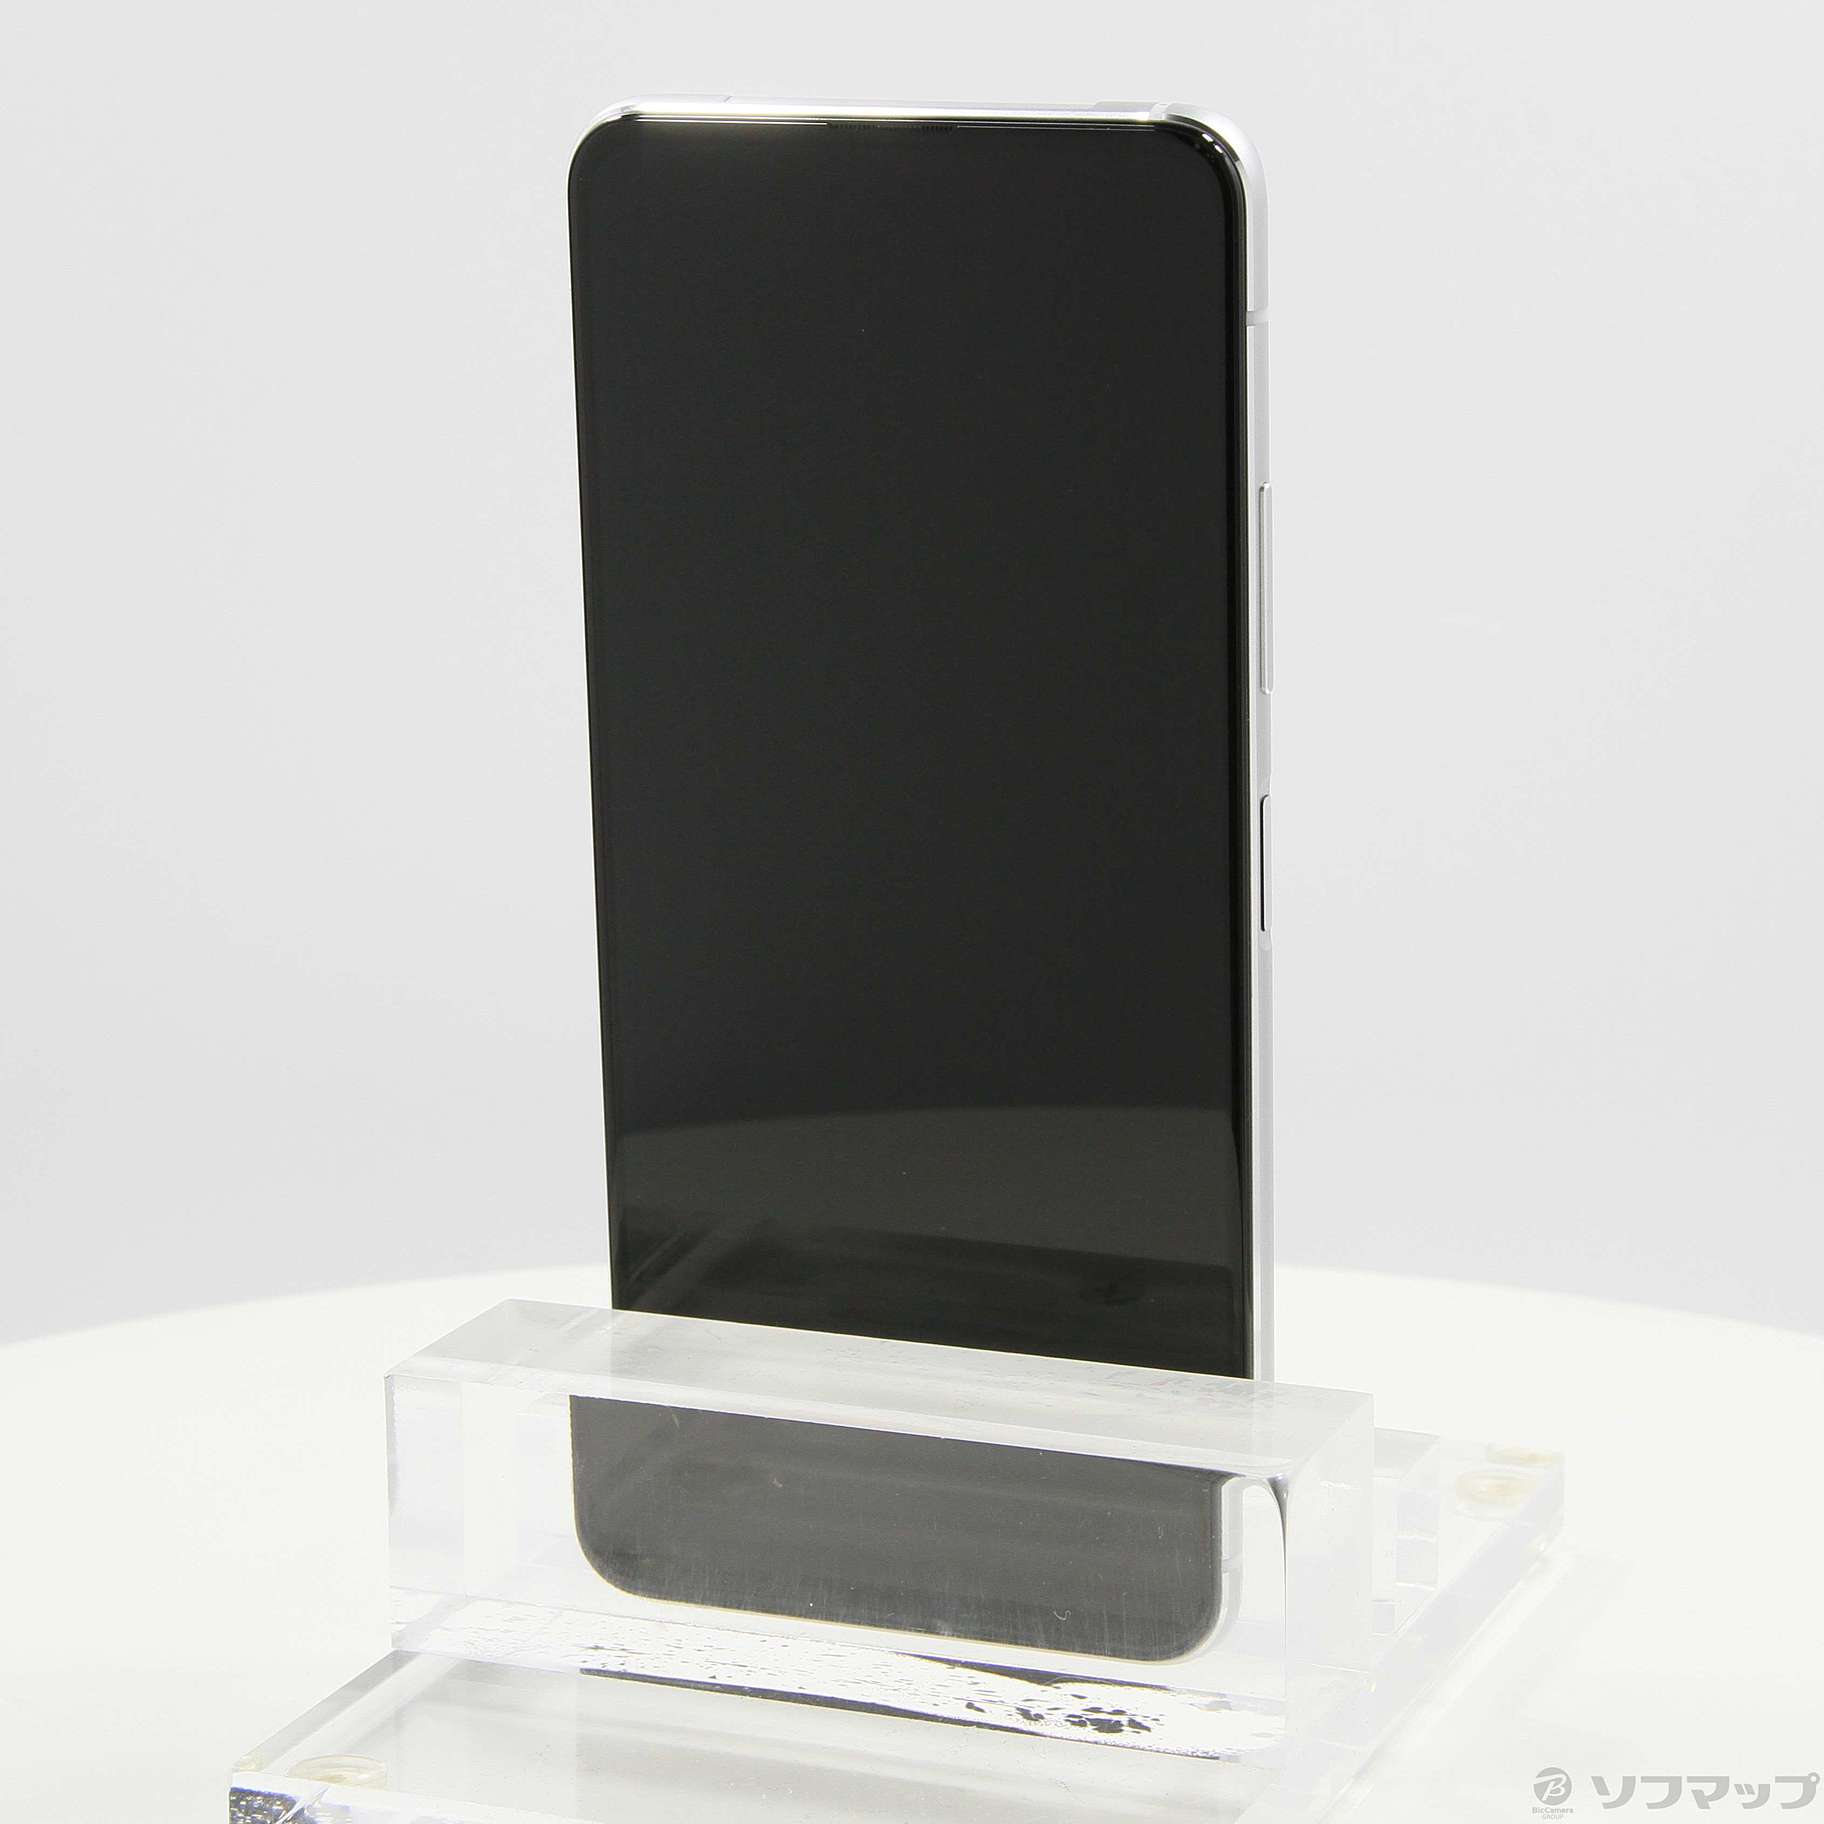 中古】ZenFone 7 128GB パステルホワイト ZS670KS-WH128S8 SIMフリー